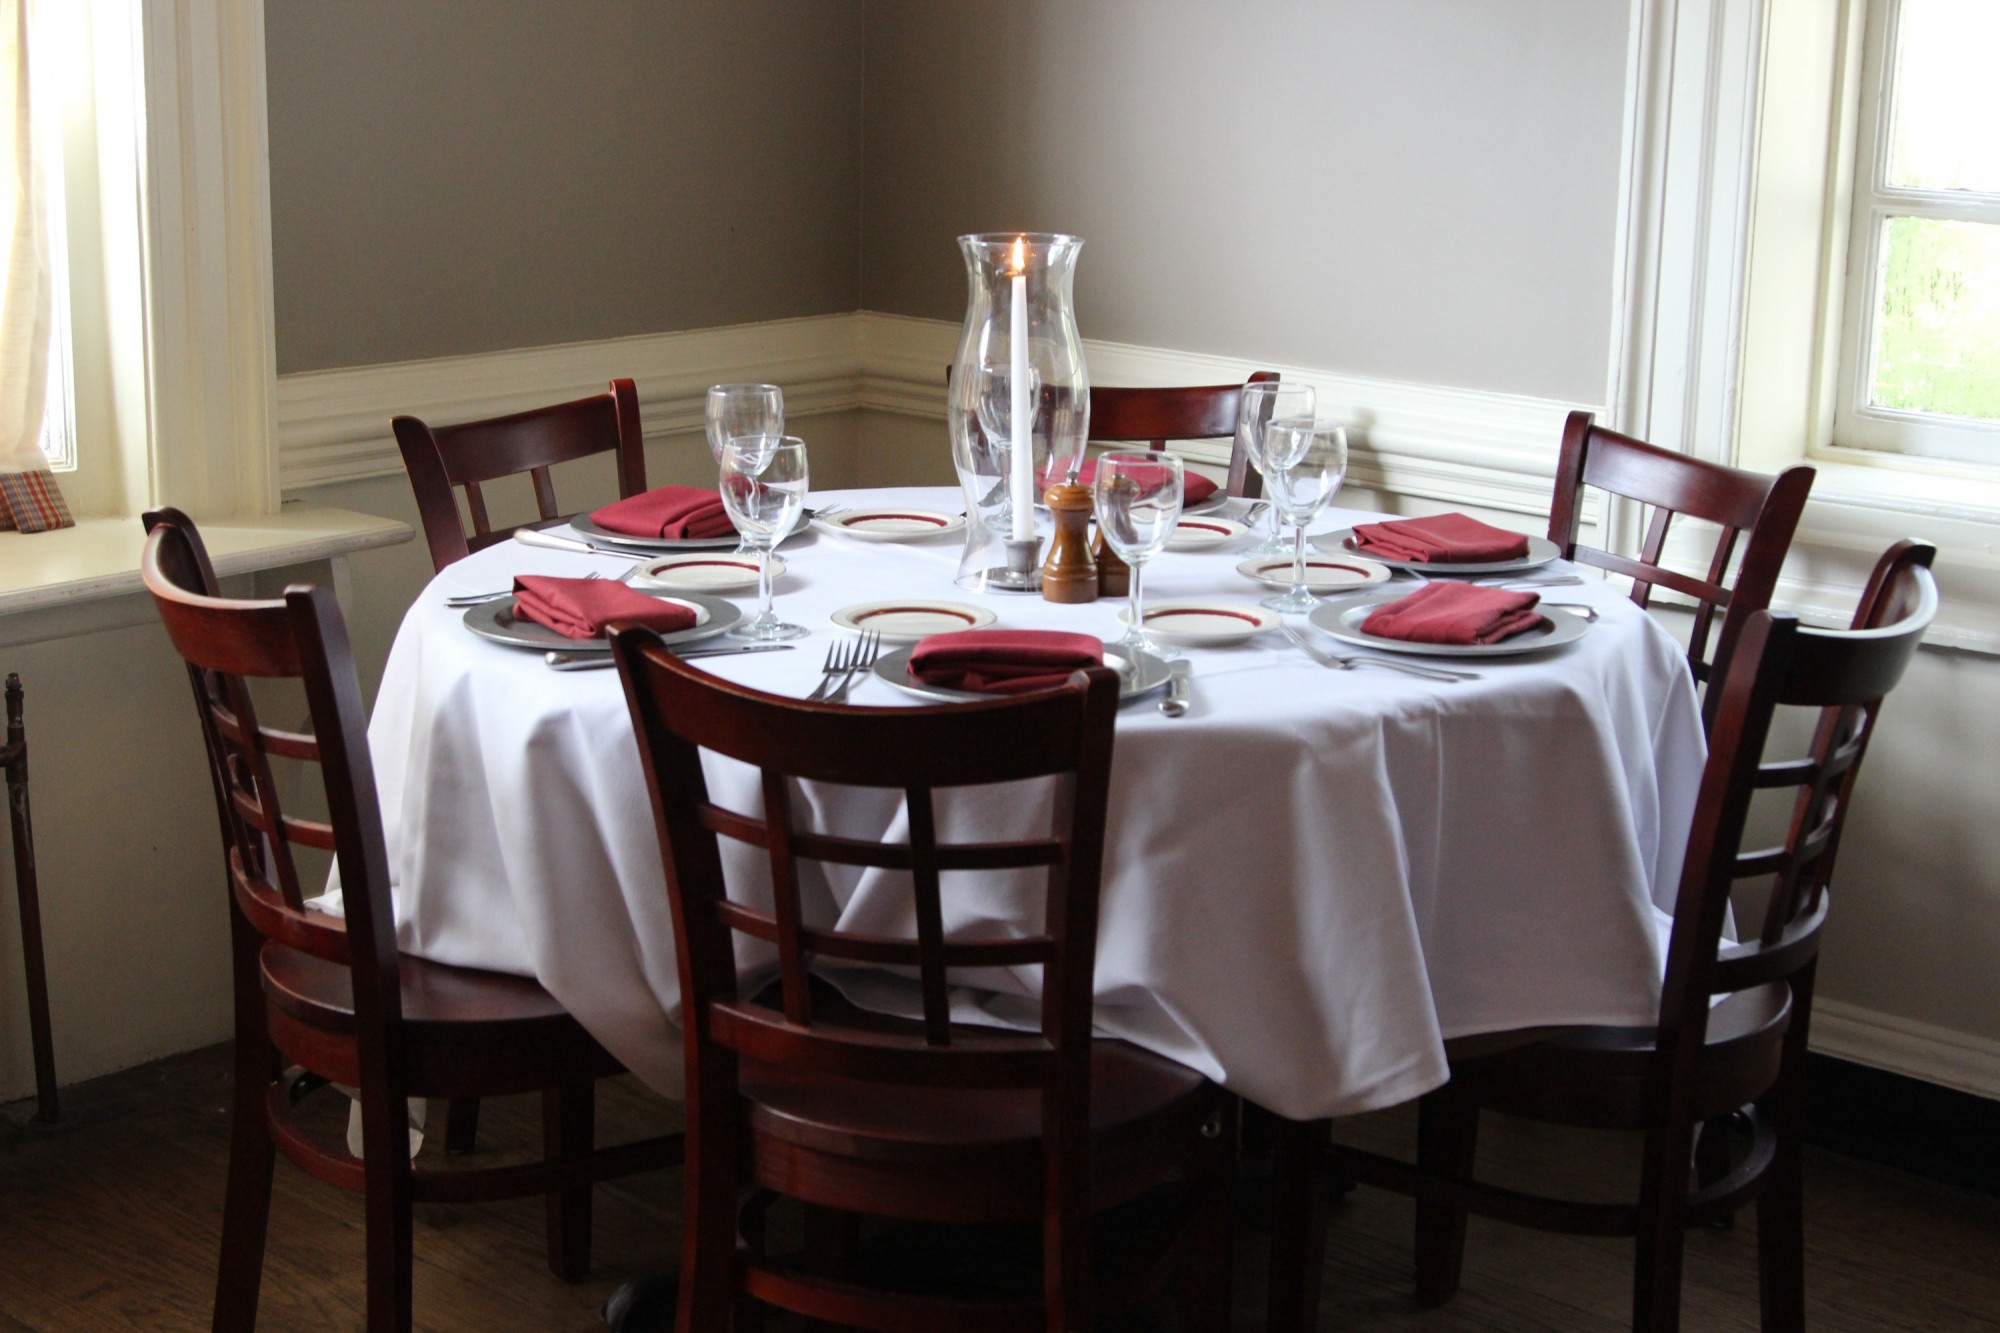 The Mount Vernon Inn Restaurant Photo